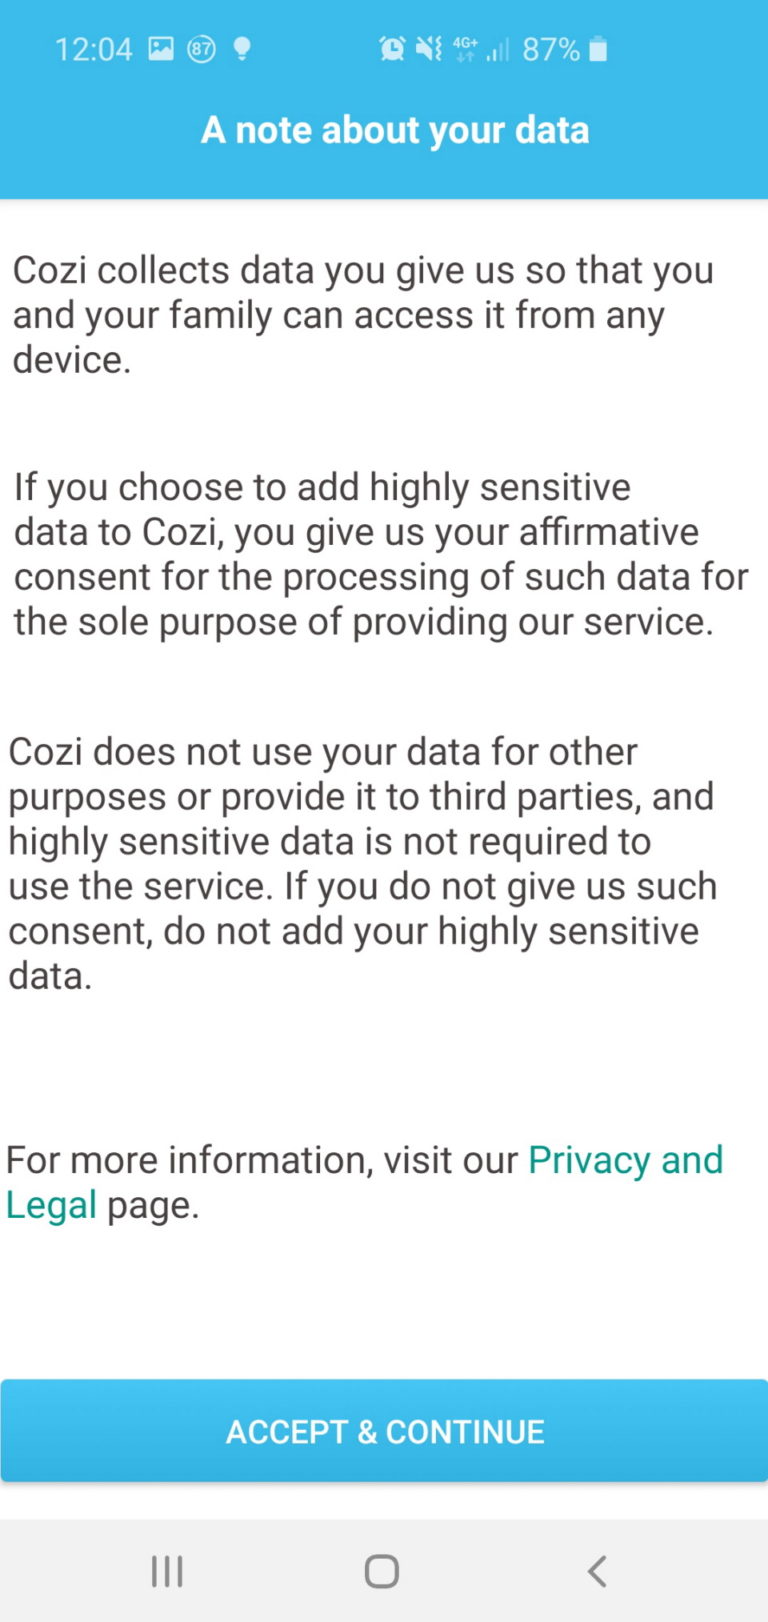 Datenschutzerklärung